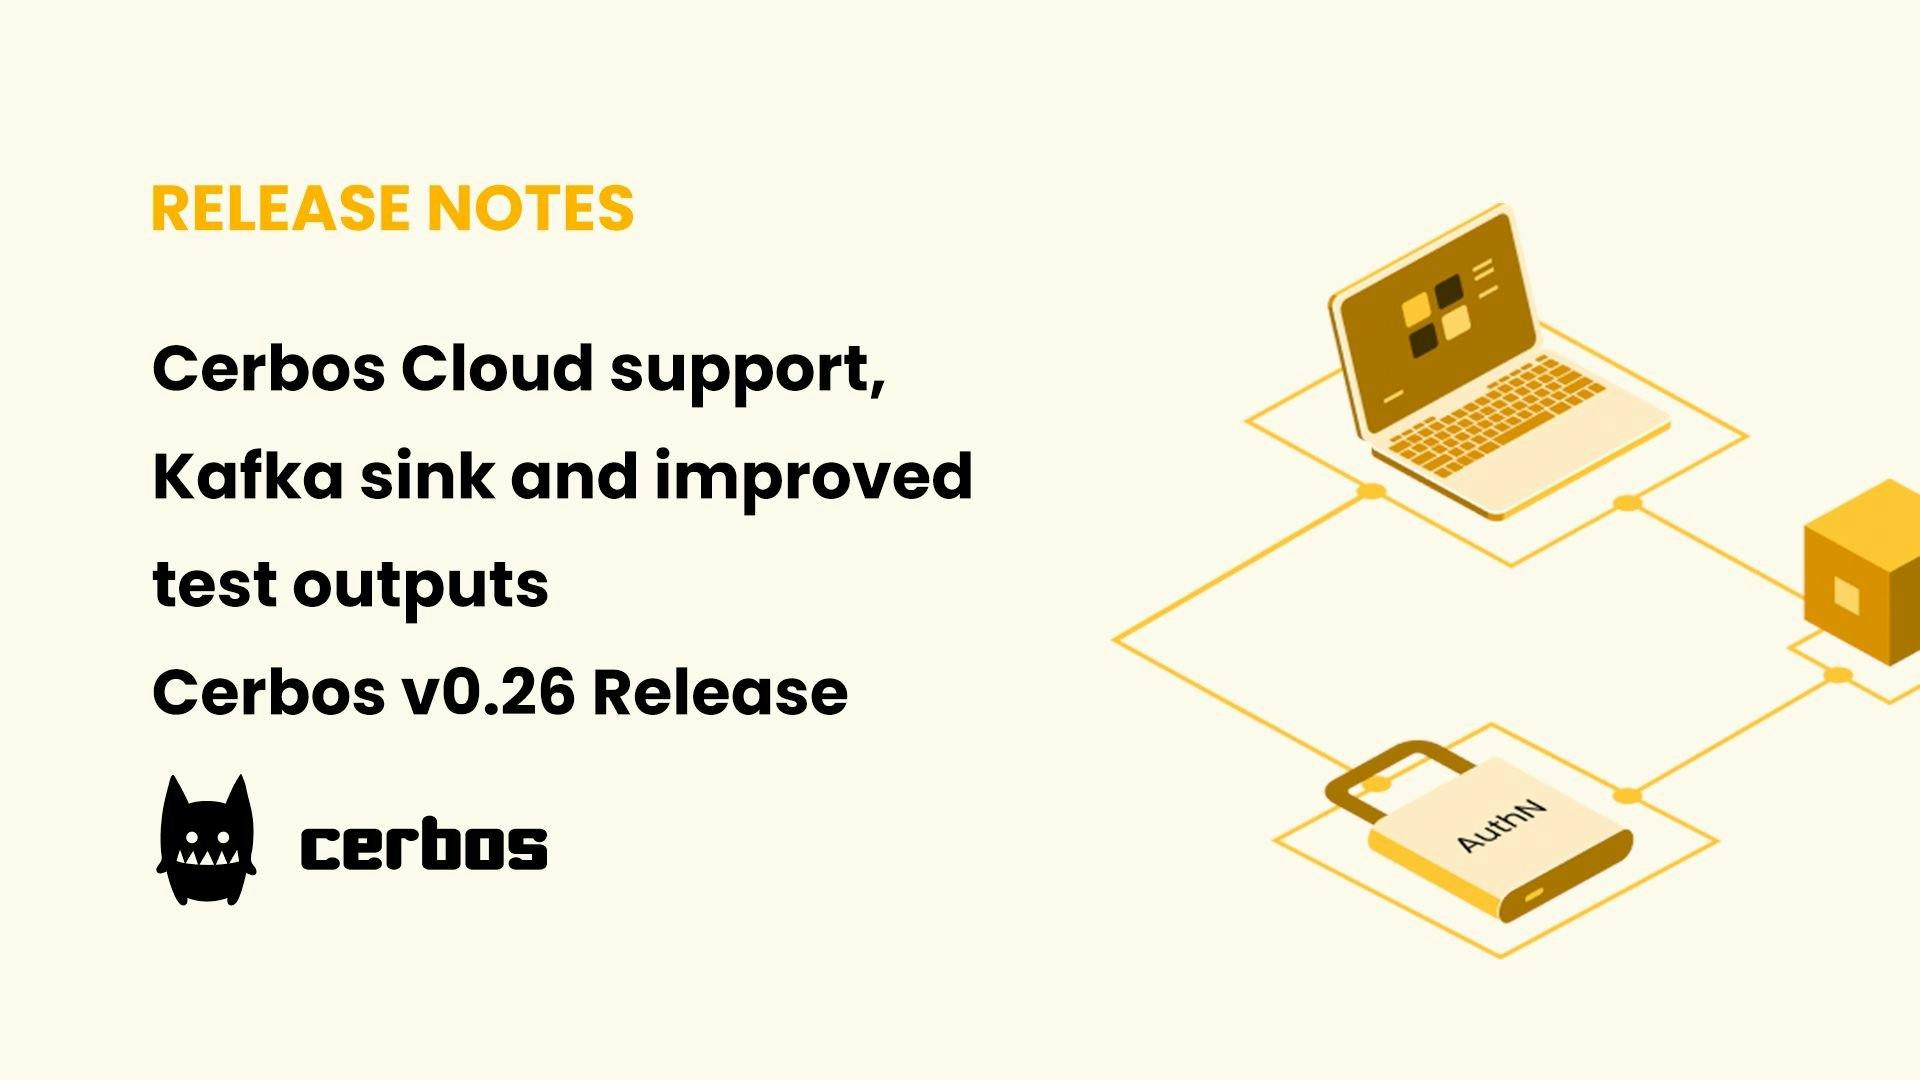 Cerbos Cloud support, Kafka sink and improved test outputs - Cerbos v0.26 Release